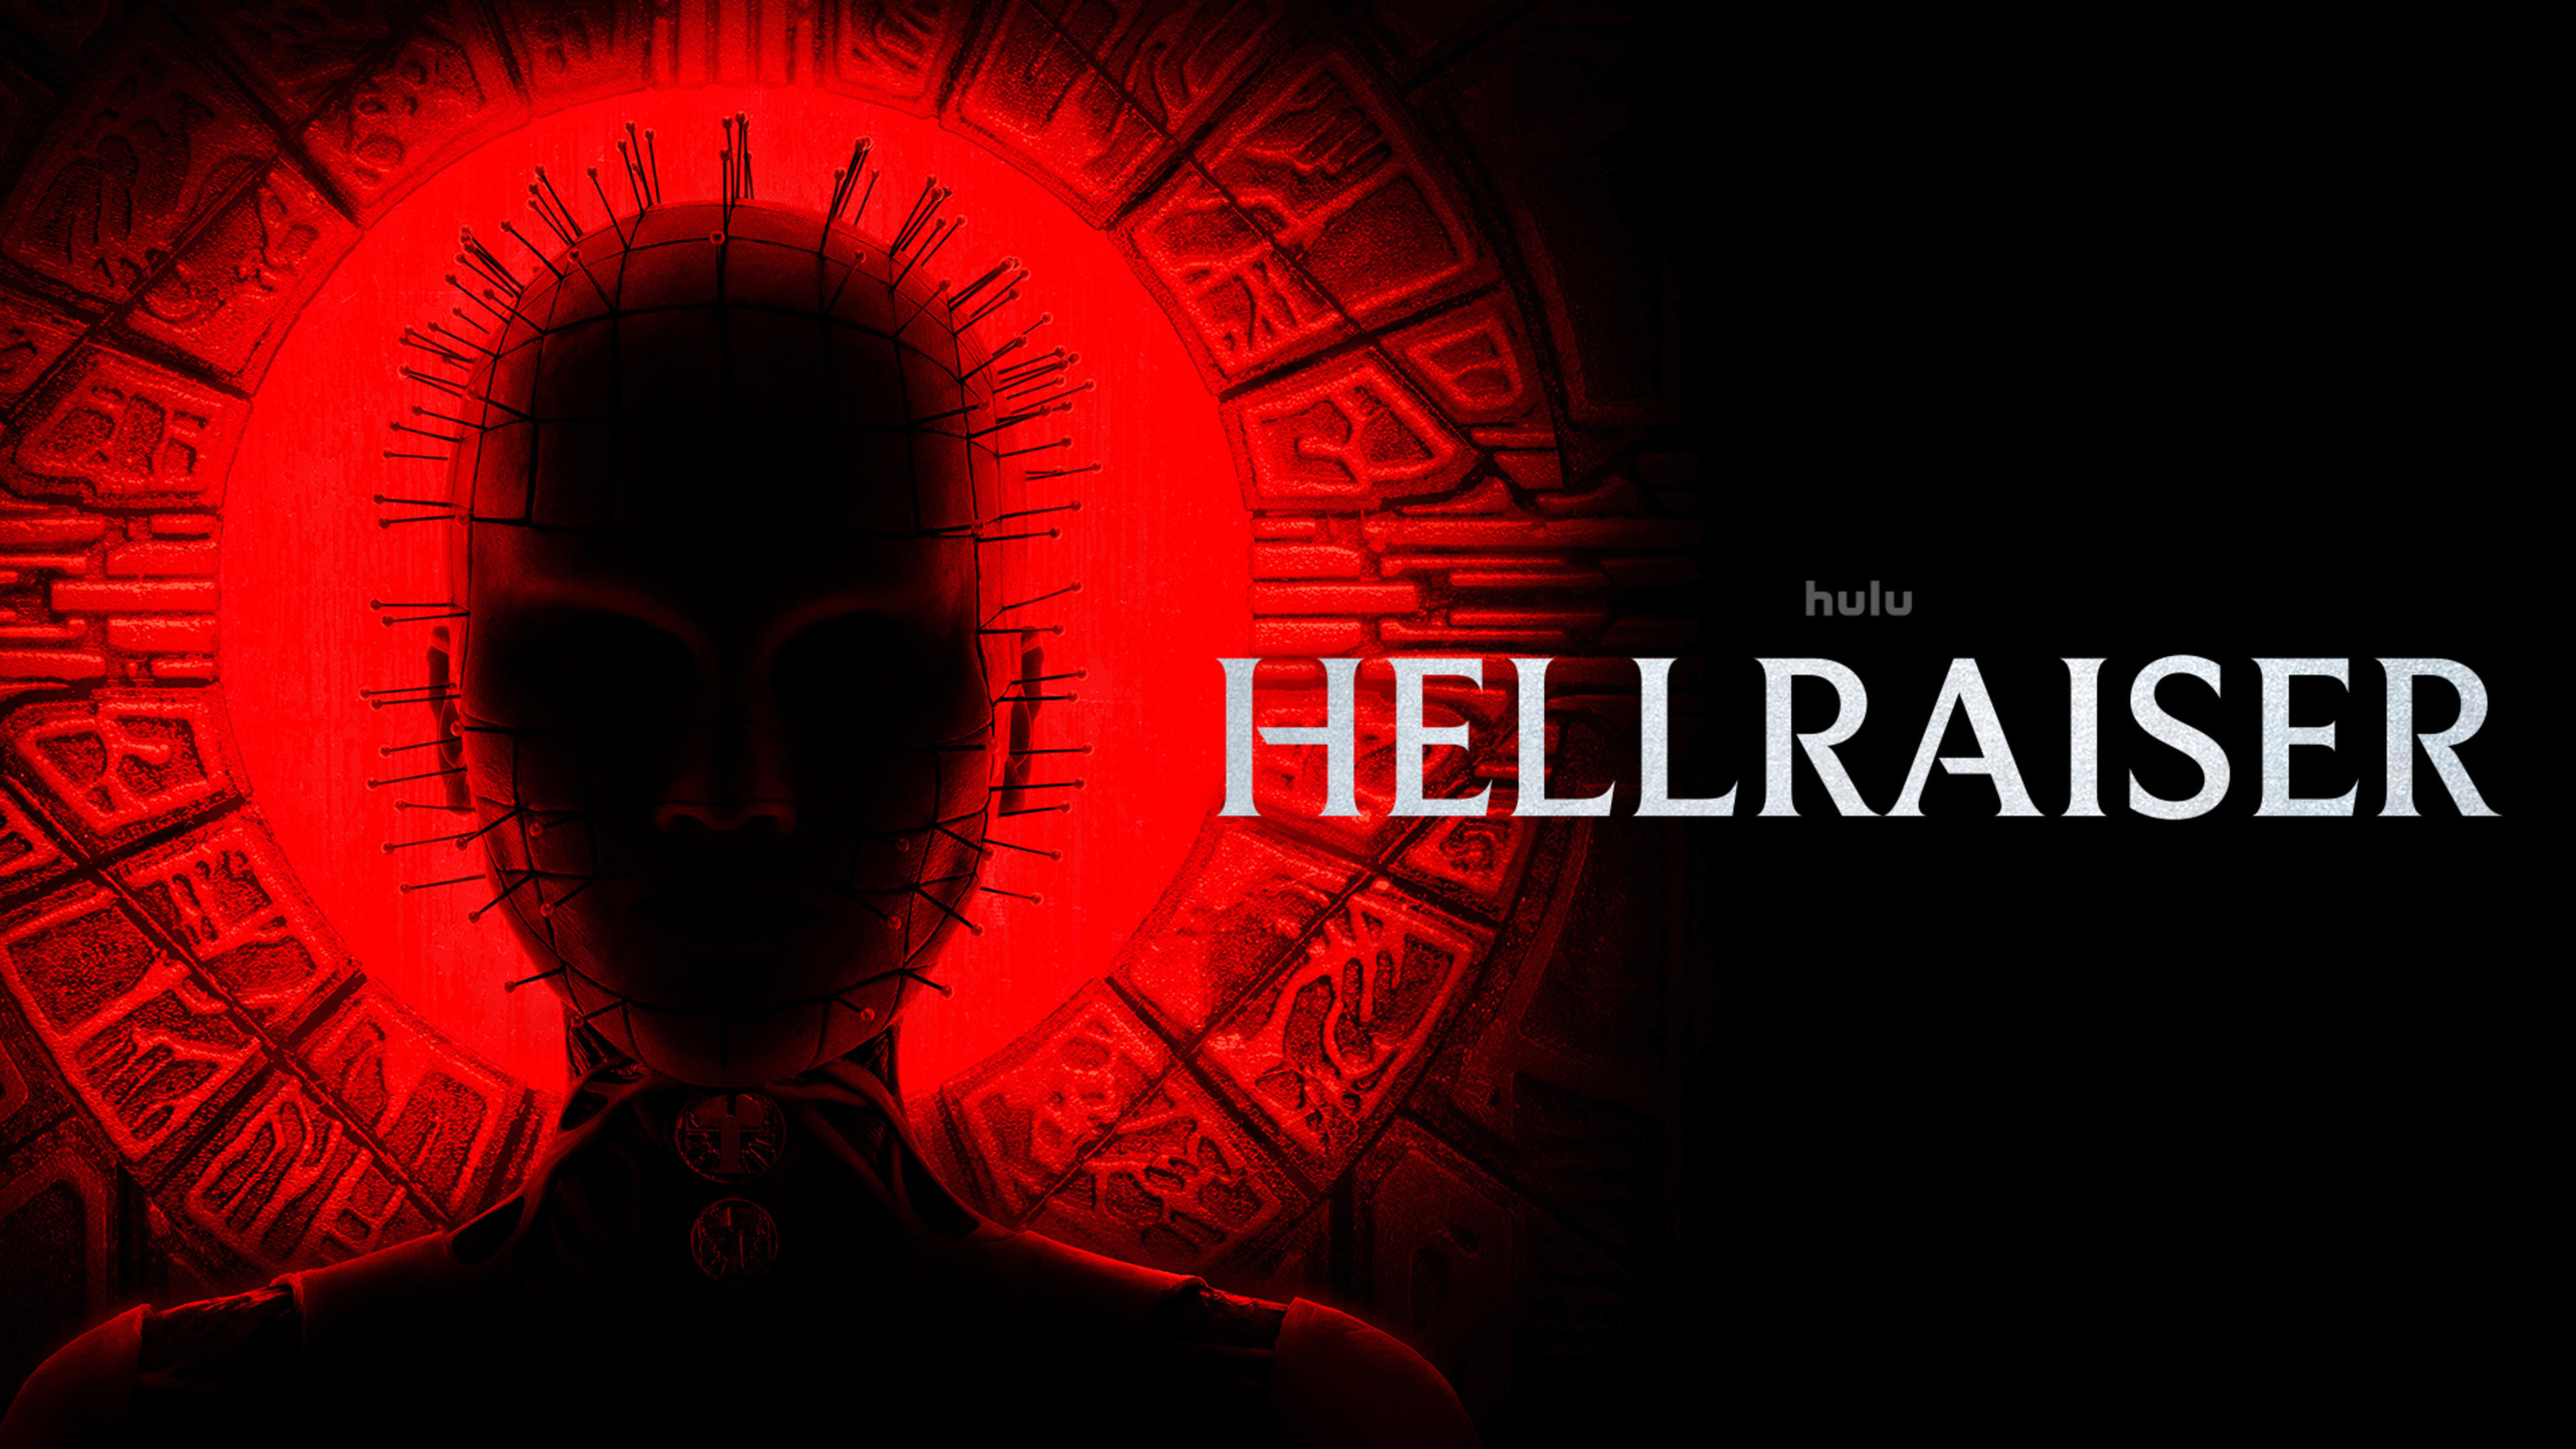 Hellraiser (2022) DVDRIP LATINO